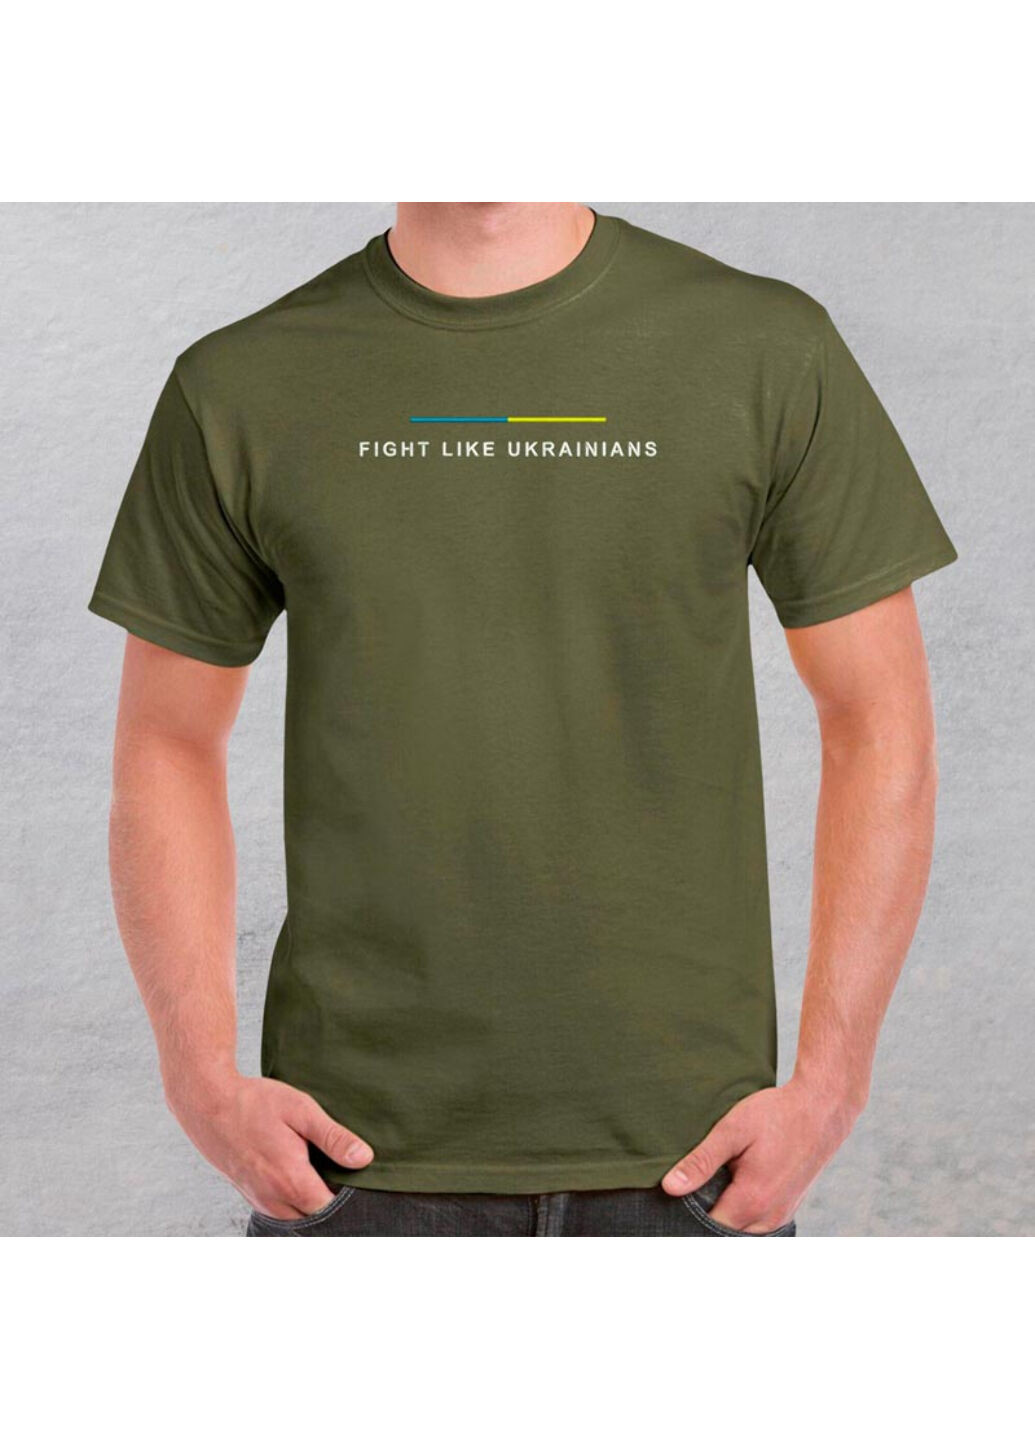 Хакі (оливкова) футболка з вишивкою fight like ukranians 01-1 чоловіча millytary green xl No Brand